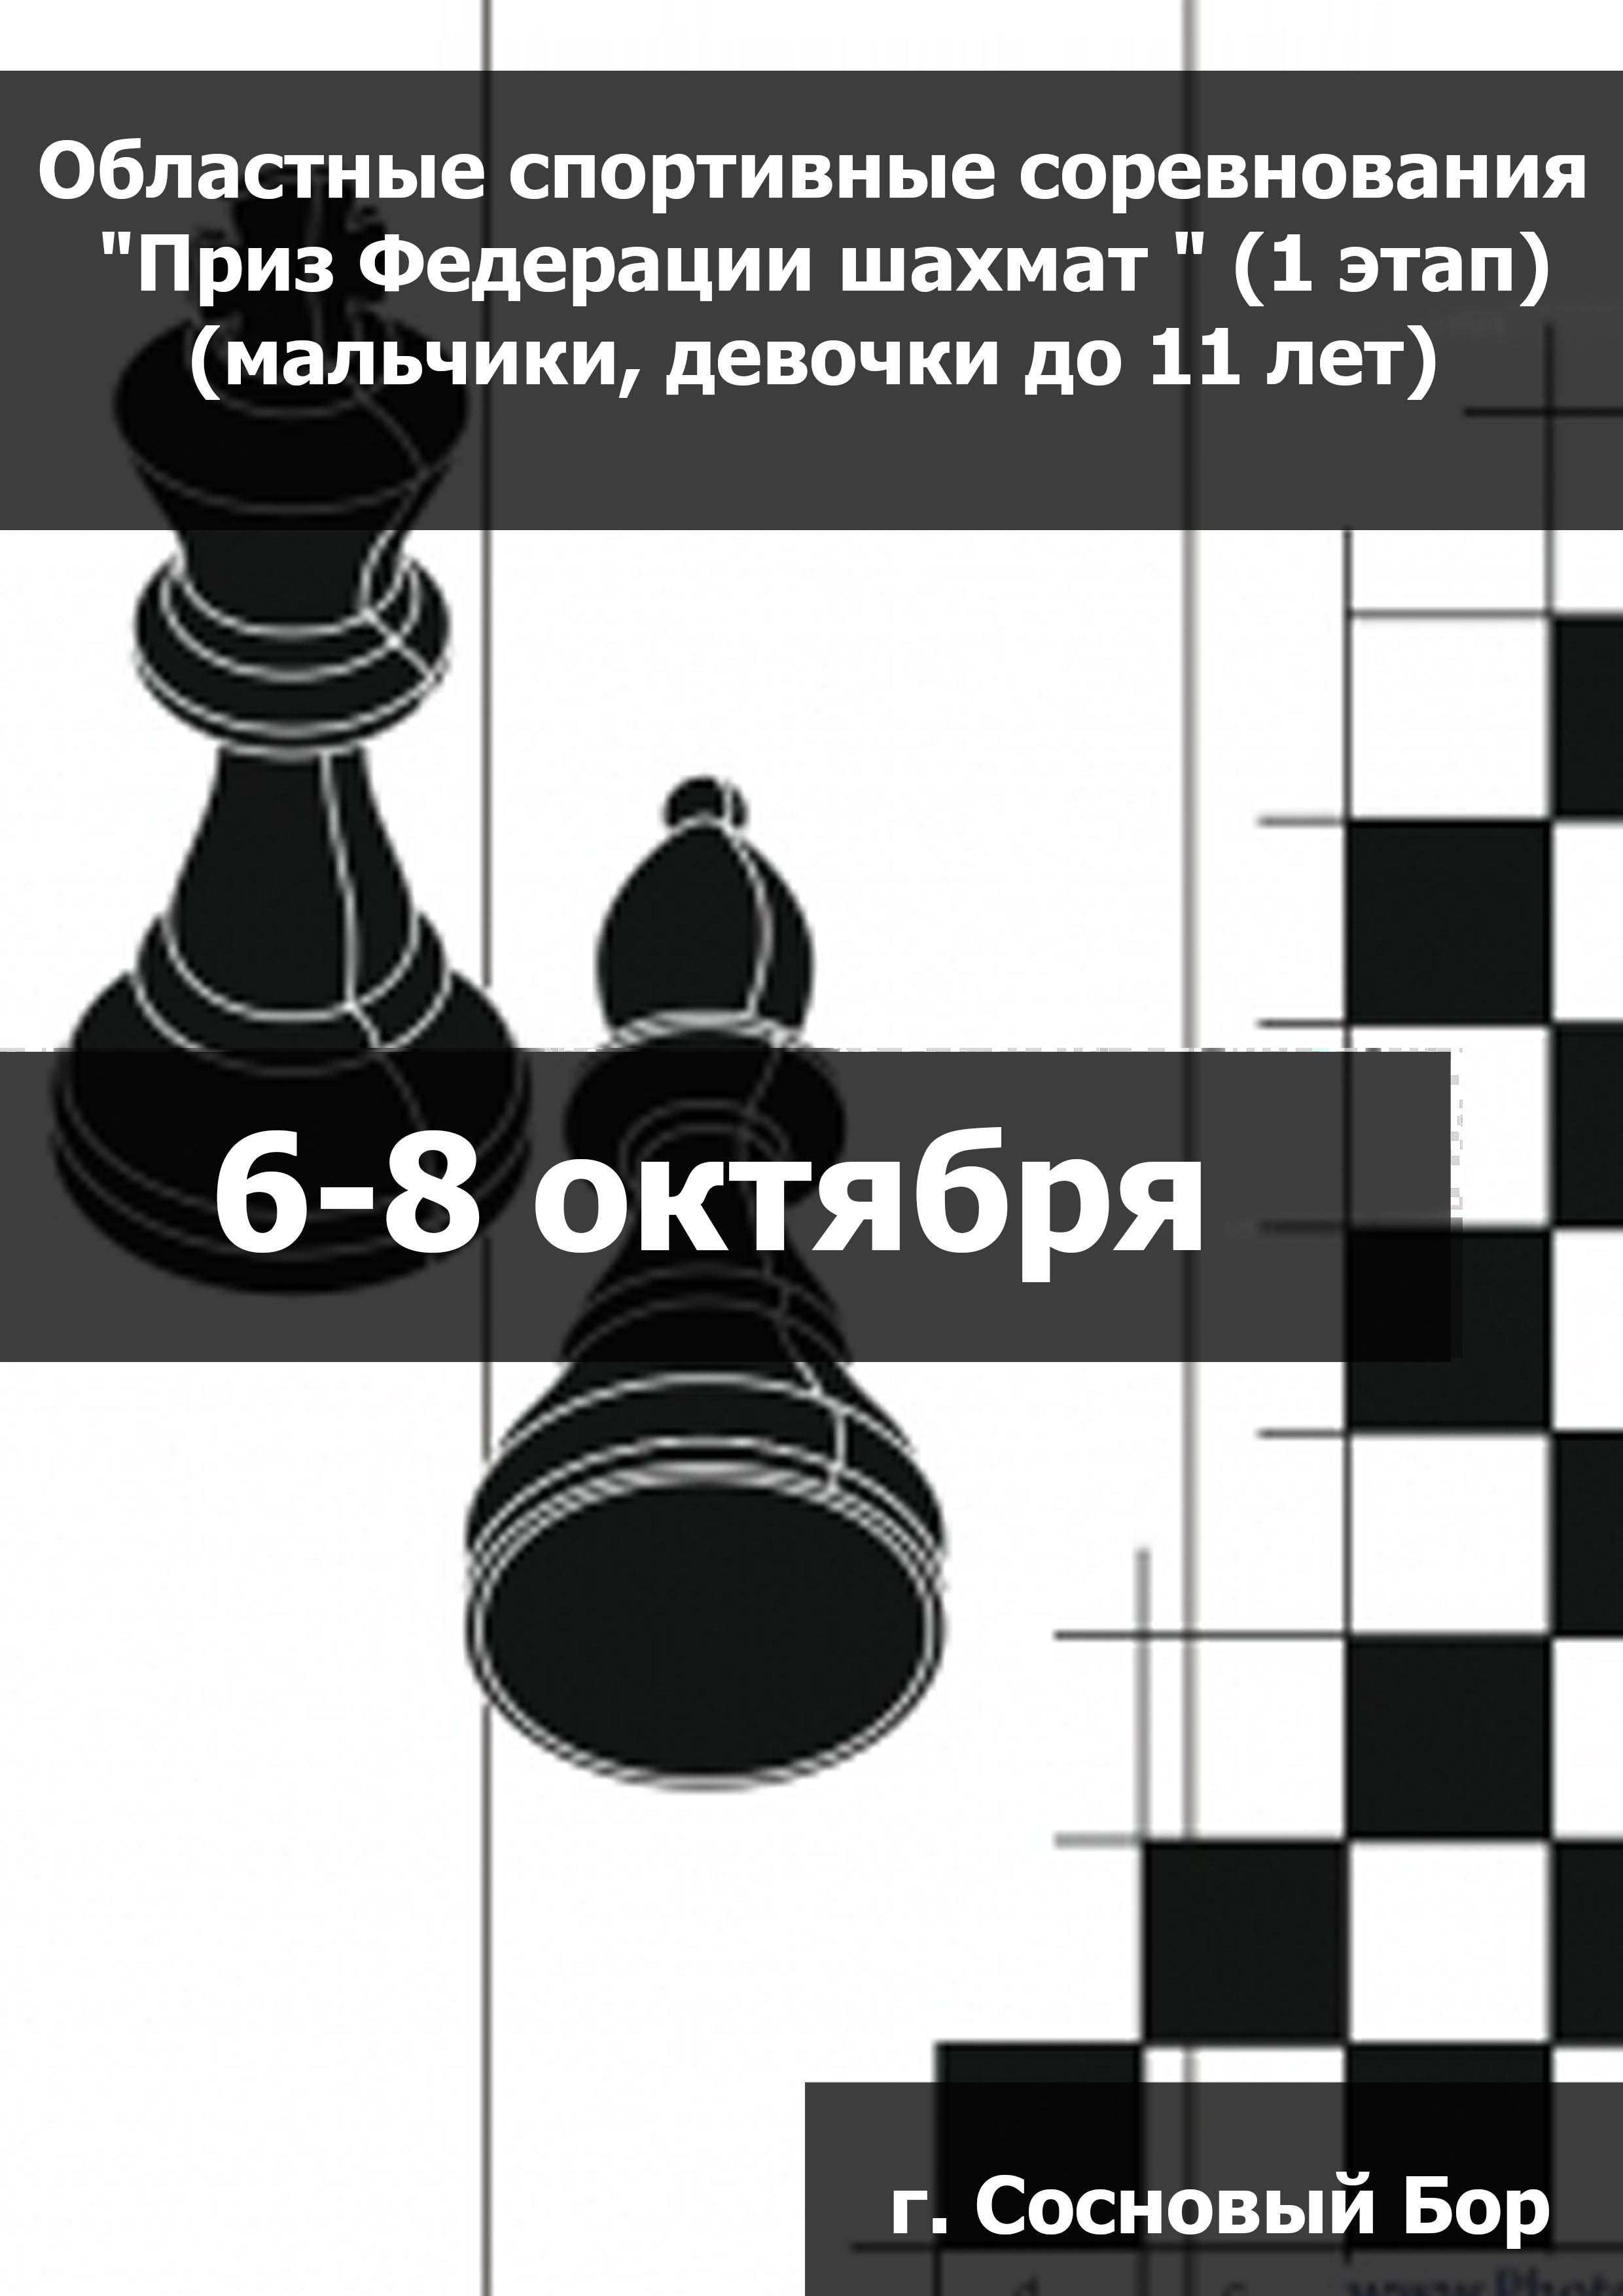 Областные спортивные соревнования "Приз Федерации шахмат " (1 этап) (мальчики, девочки до 11 лет) 6  spalis
 2023  metai
 